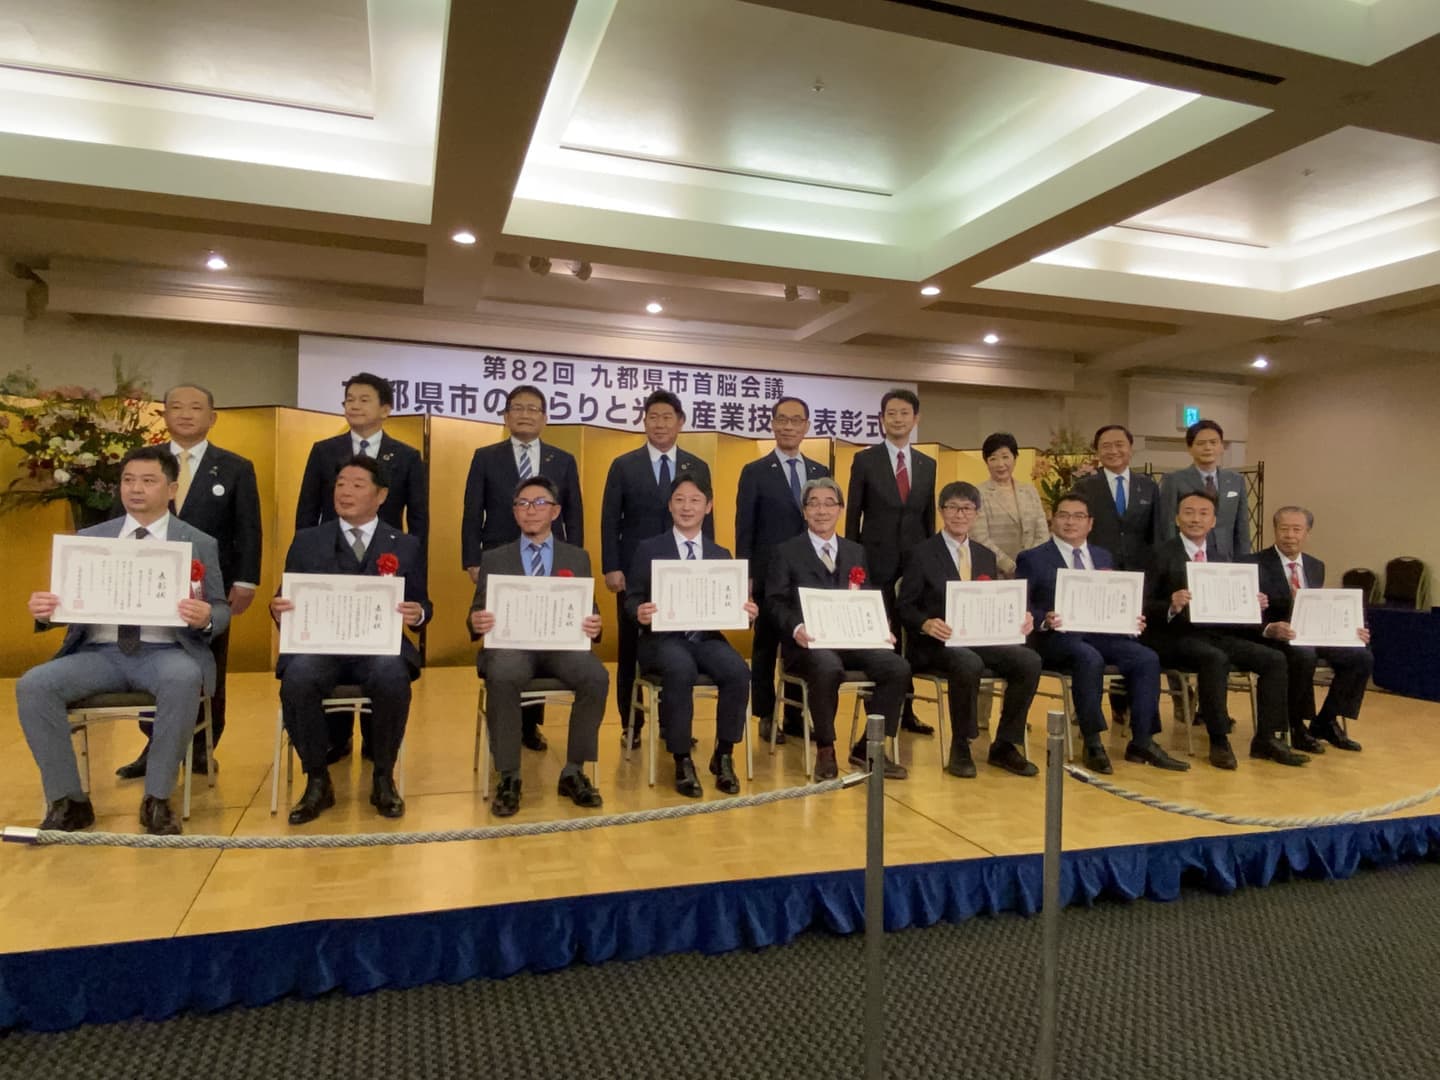 九都県市のきらりと光る産業技術表彰式